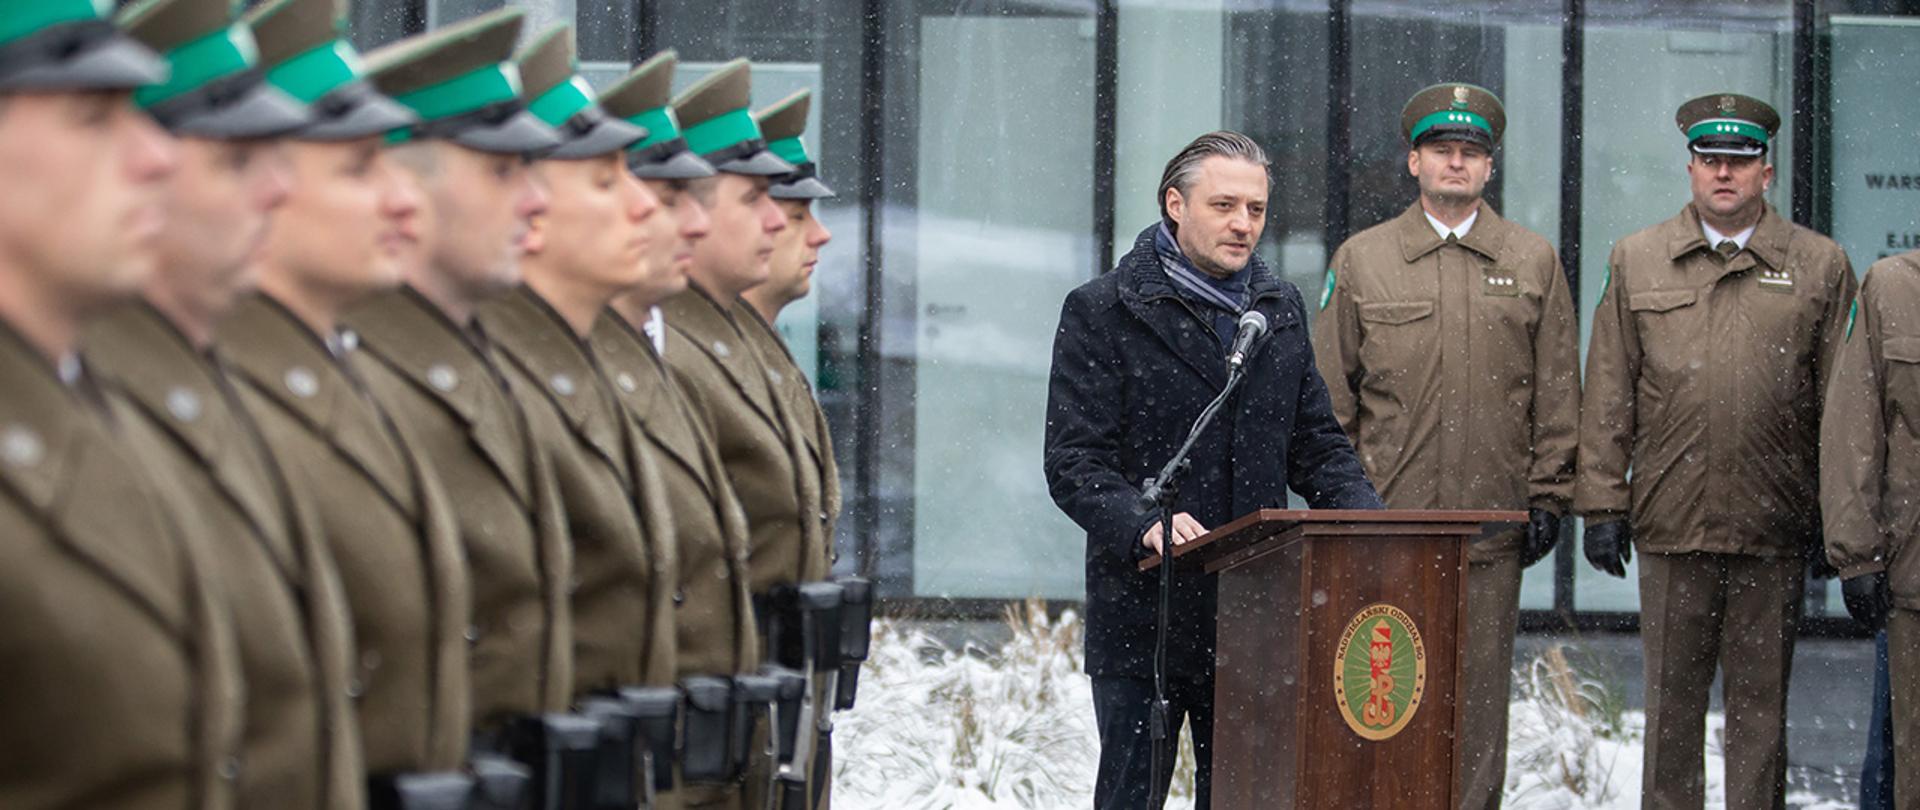 Wiceminister Bartosz Grodecki podczas przemówienia w Radomiu stojący przy mównicy.